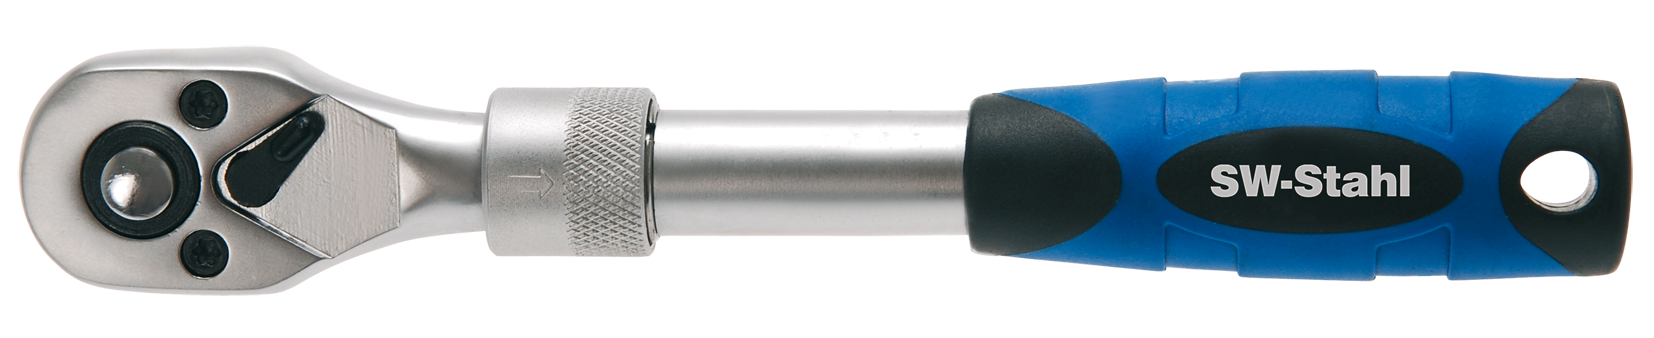 SWSTAHL Telescop ratchet wrench, 1/4 inch 05716L